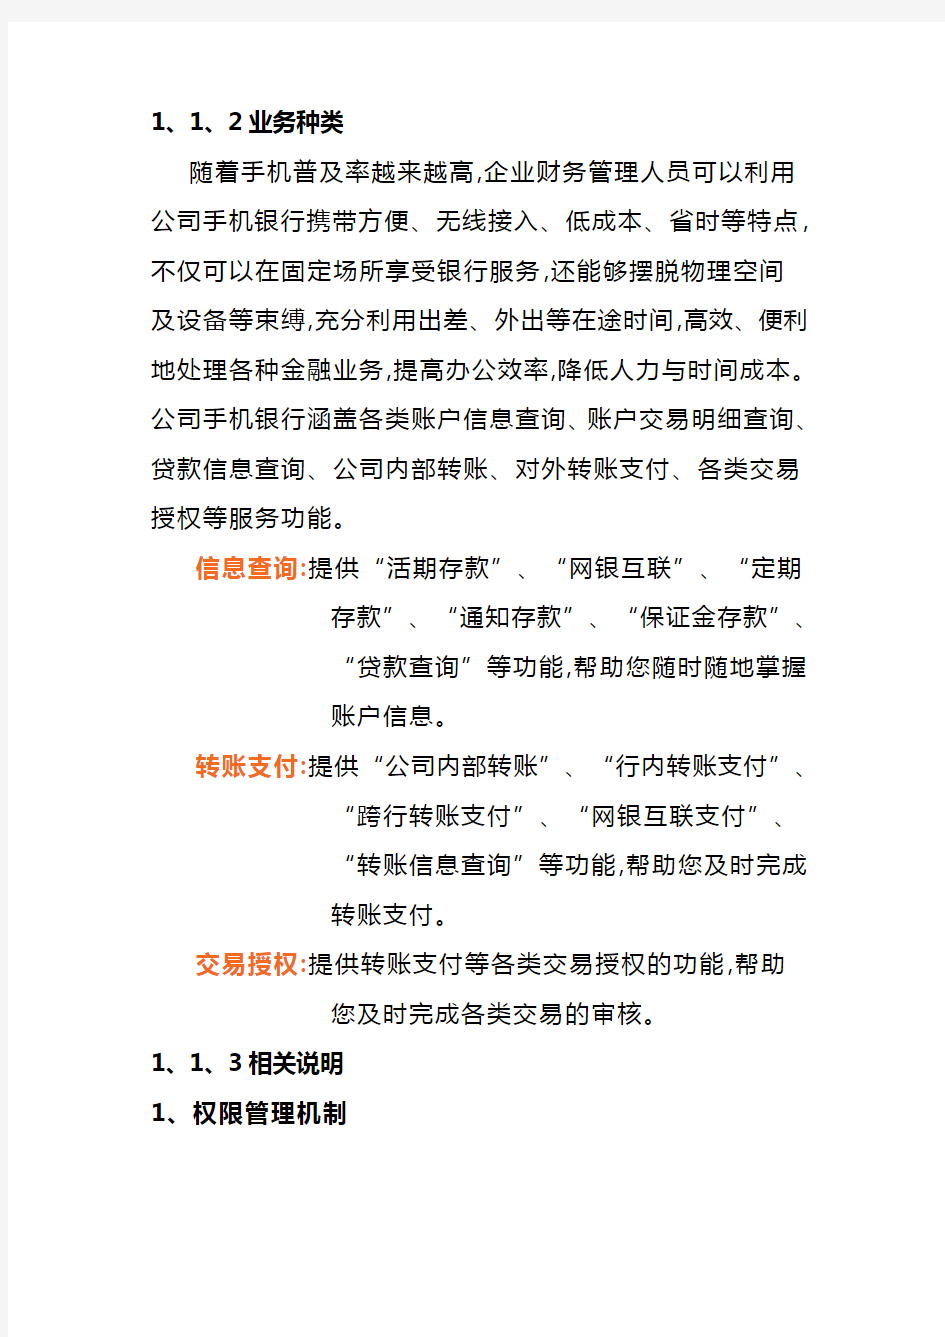 上海浦东发展银行手机银行企业版客户指导手册